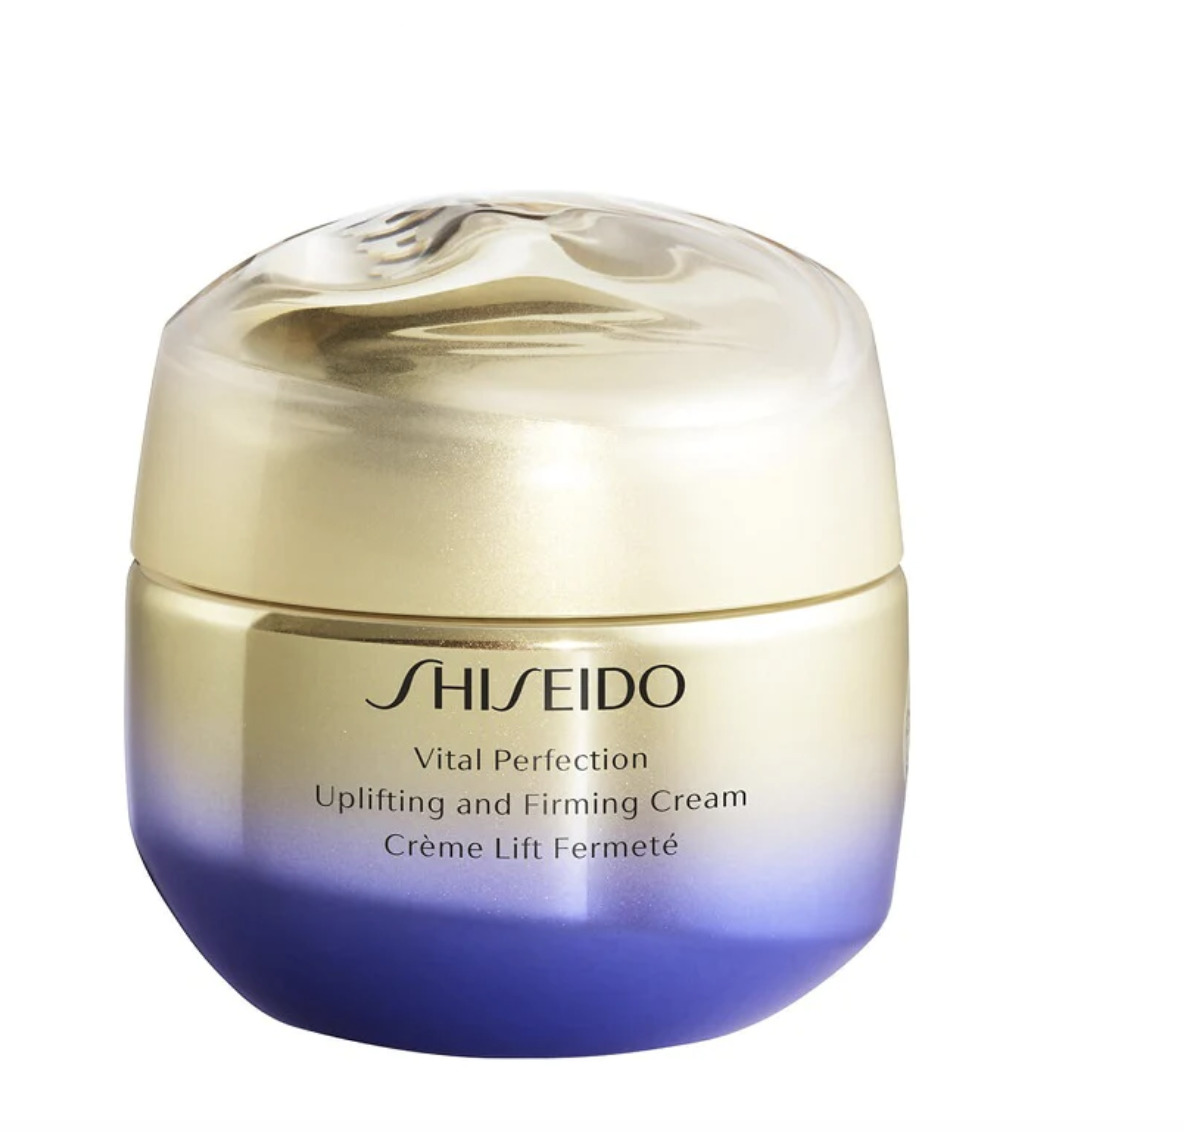 Vital Perfection, Shiseido